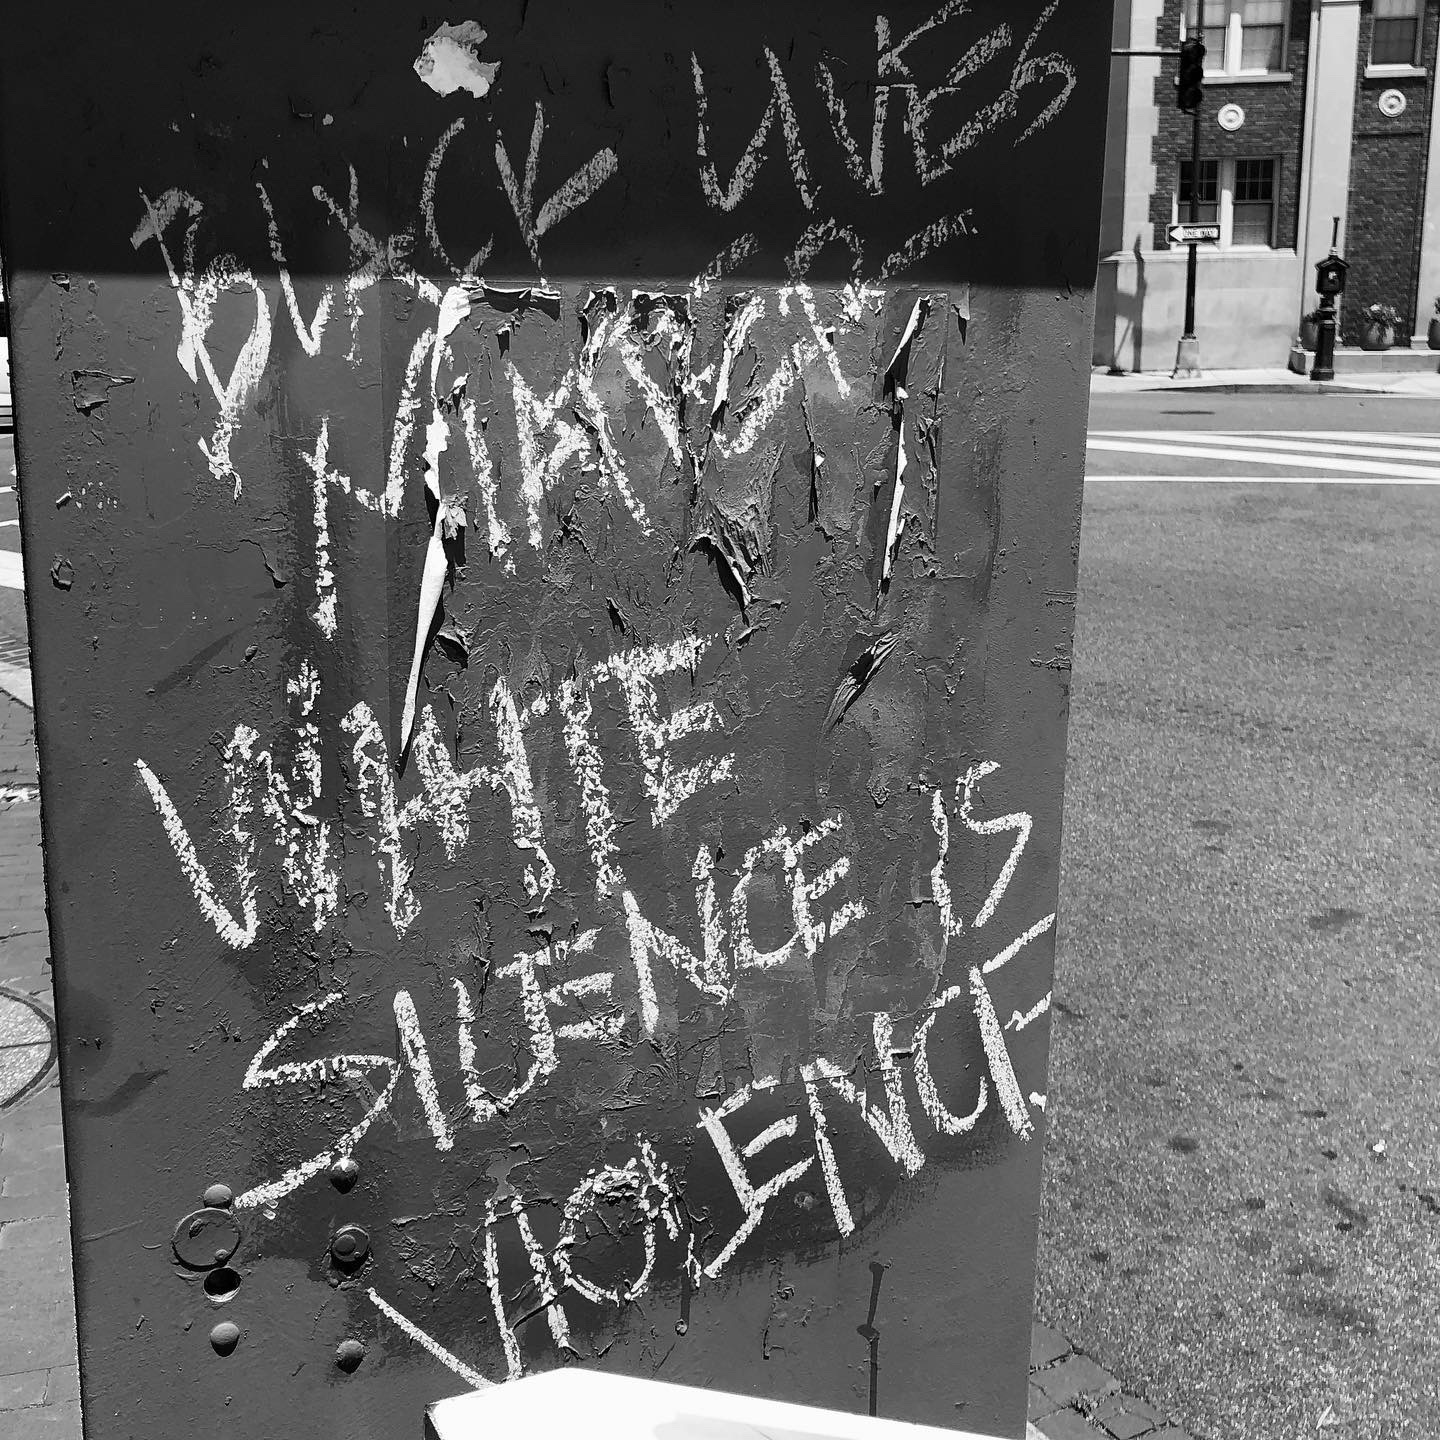 Gros plan d'un panneau, dans une rue, portant l'inscription "Black lives matter, White silence is violence" à la craie en lettres majuscules.